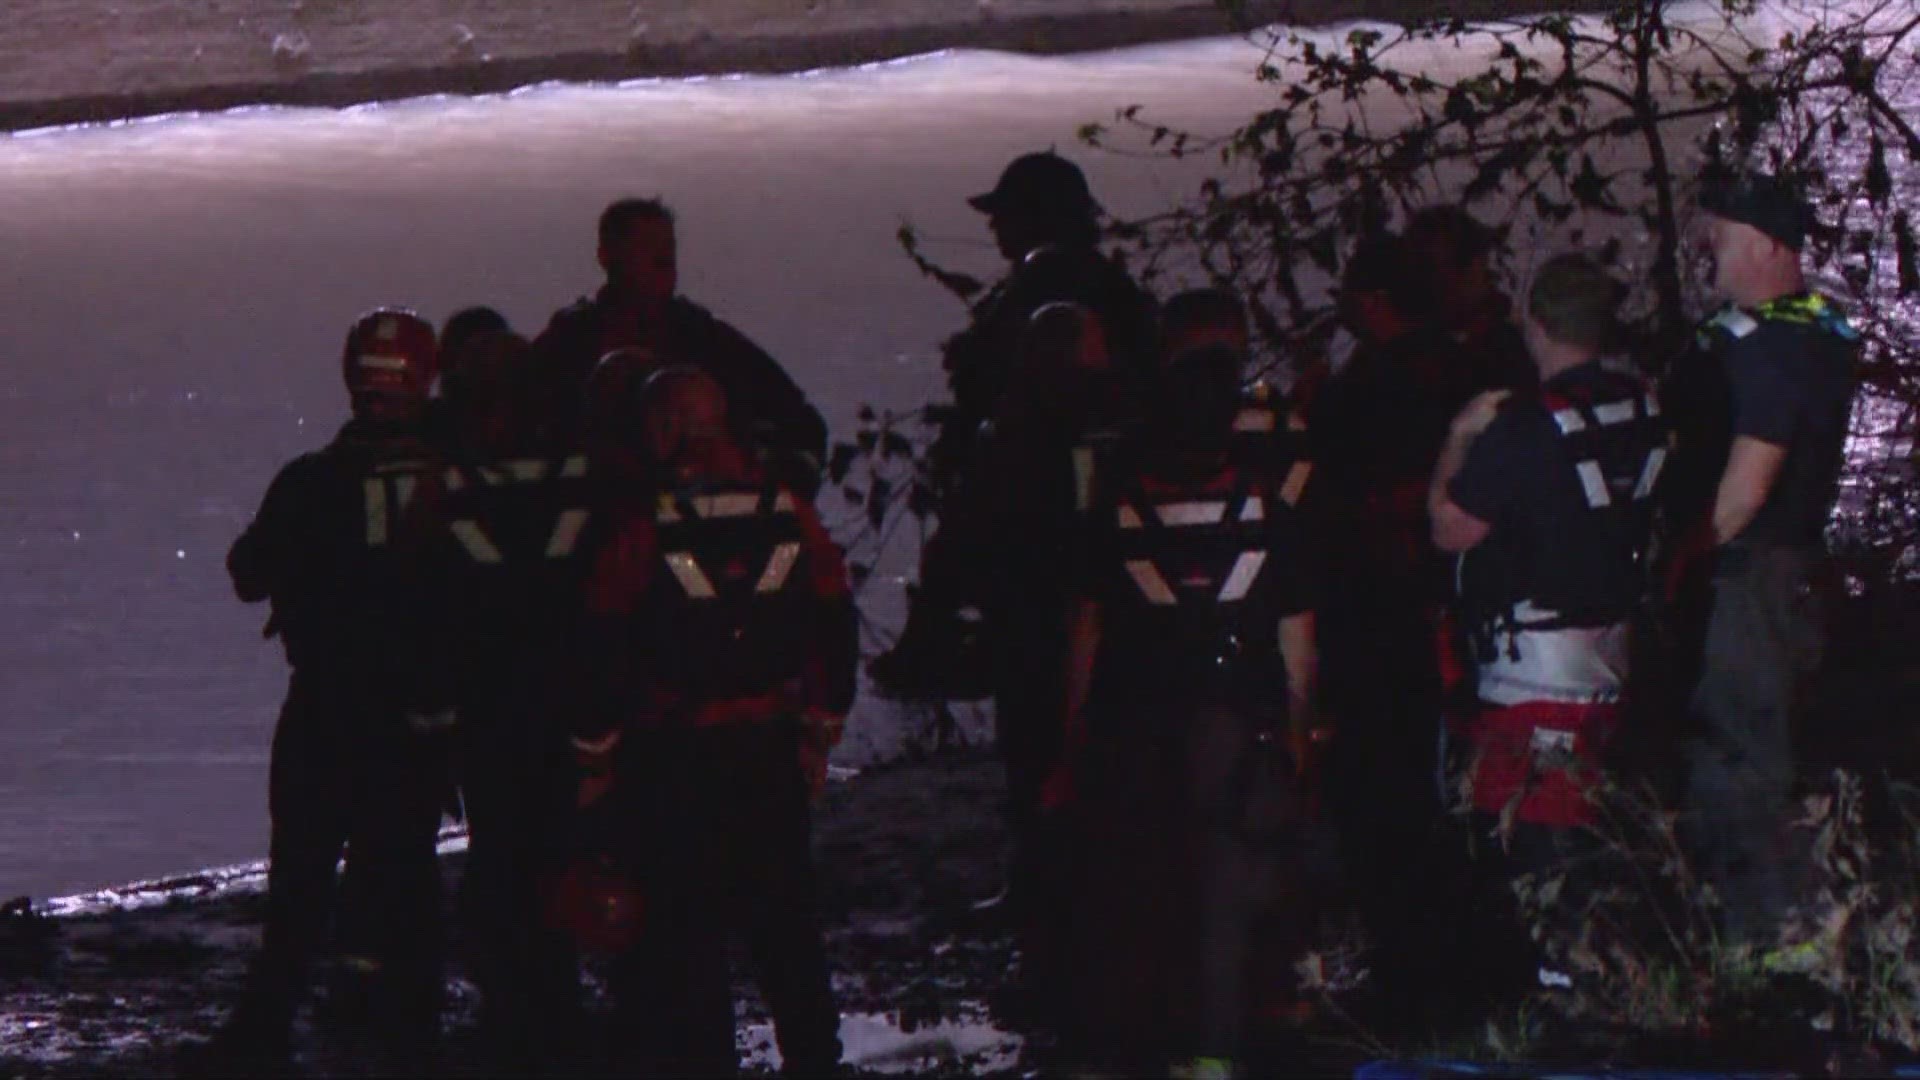 Rescue crews were called around 8:30 p.m. Tuesday.